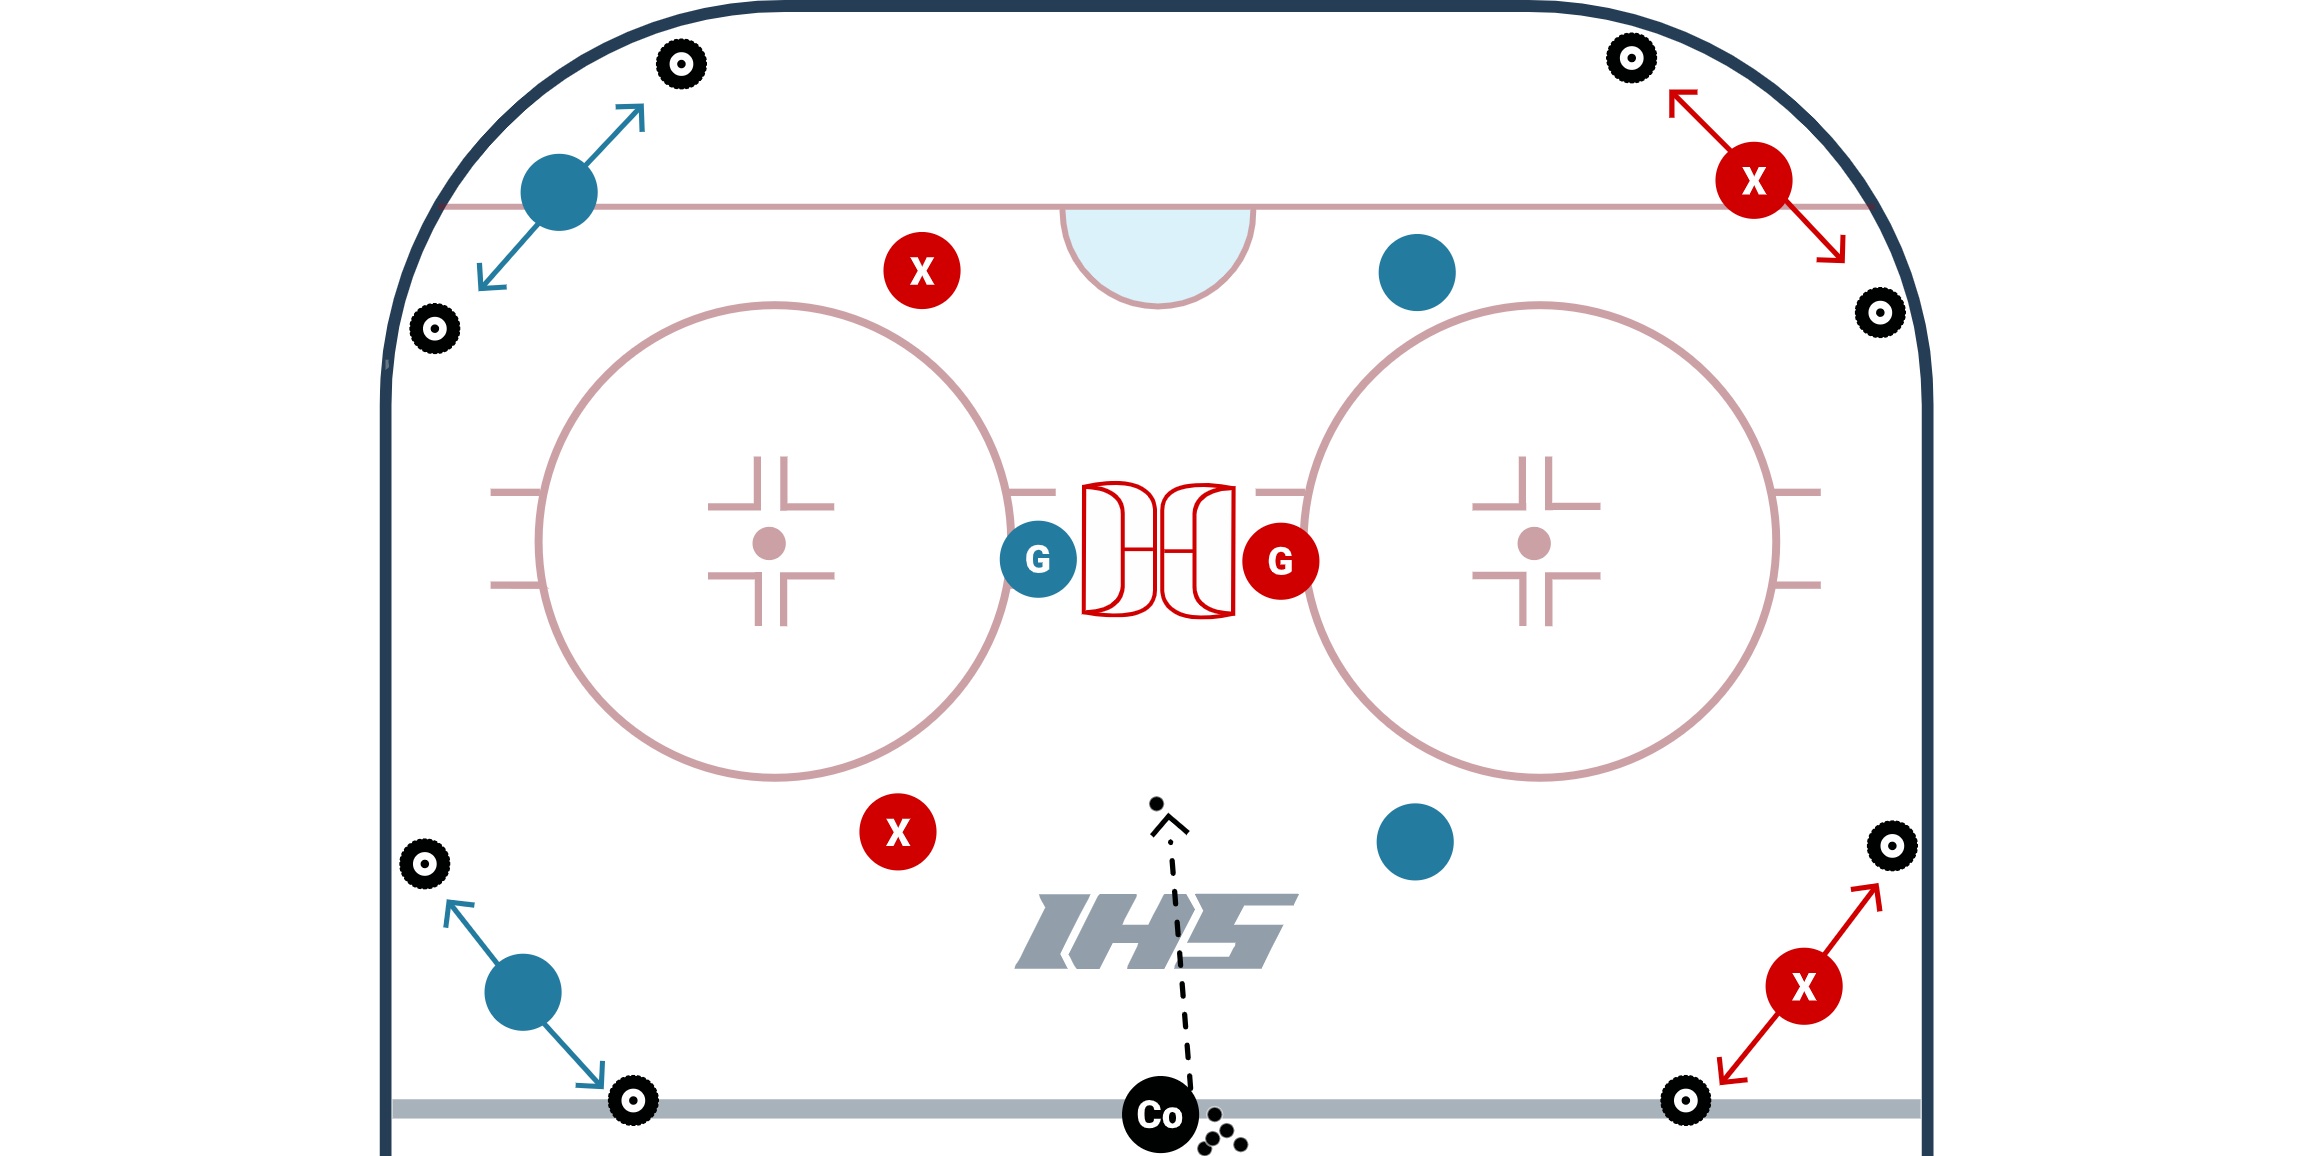 4 Corner Possession Game - Defensive Advantage diagram